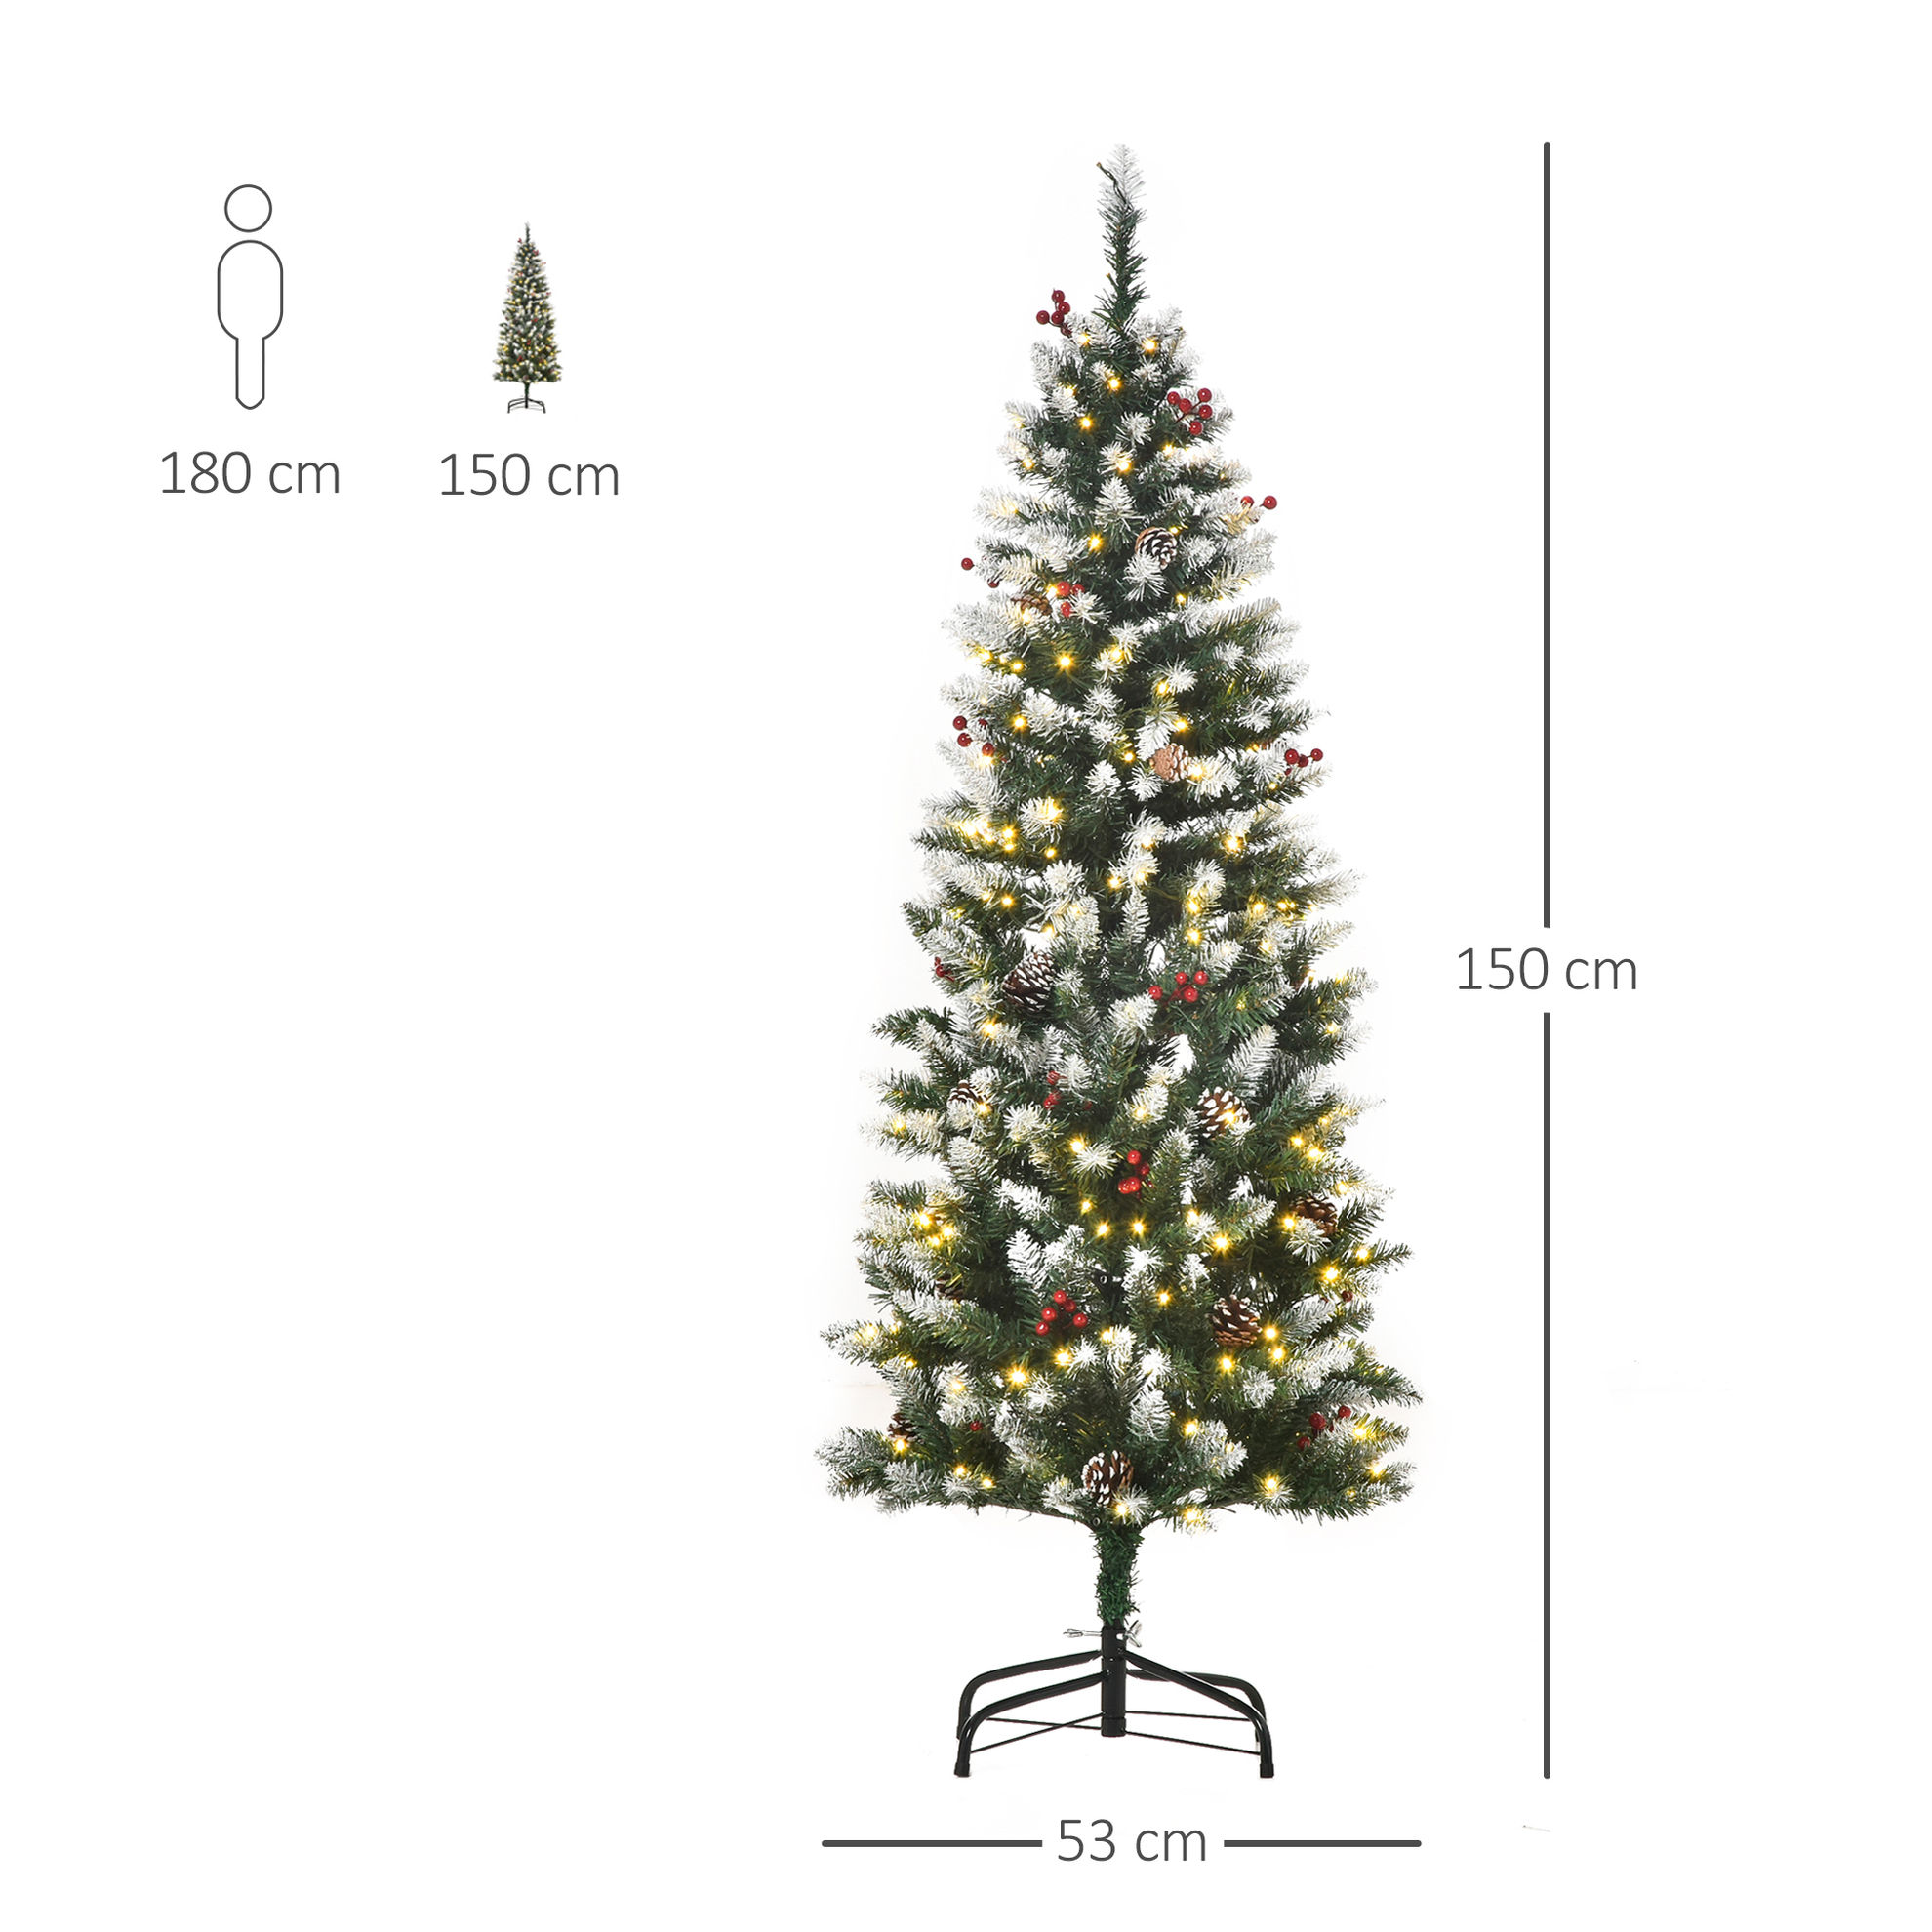 Künstlicher Weihnachtsbaum mit Beleuchtung, Schmuck und künstlichen Schnee  | Weltbild.de